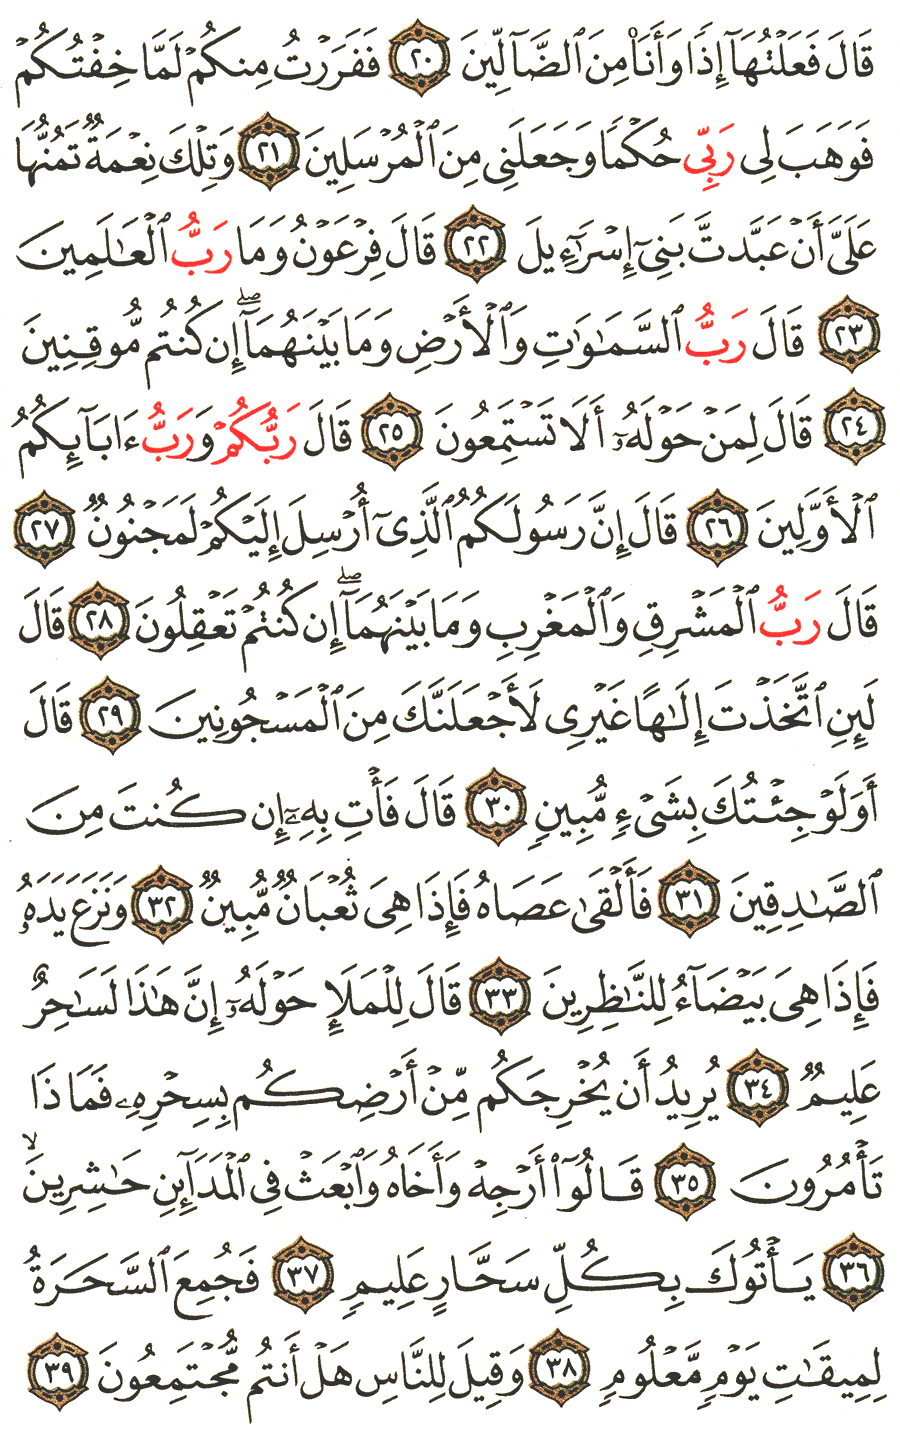 الصفحة رقم 368  من القرآن الكريم مكتوبة من المصحف